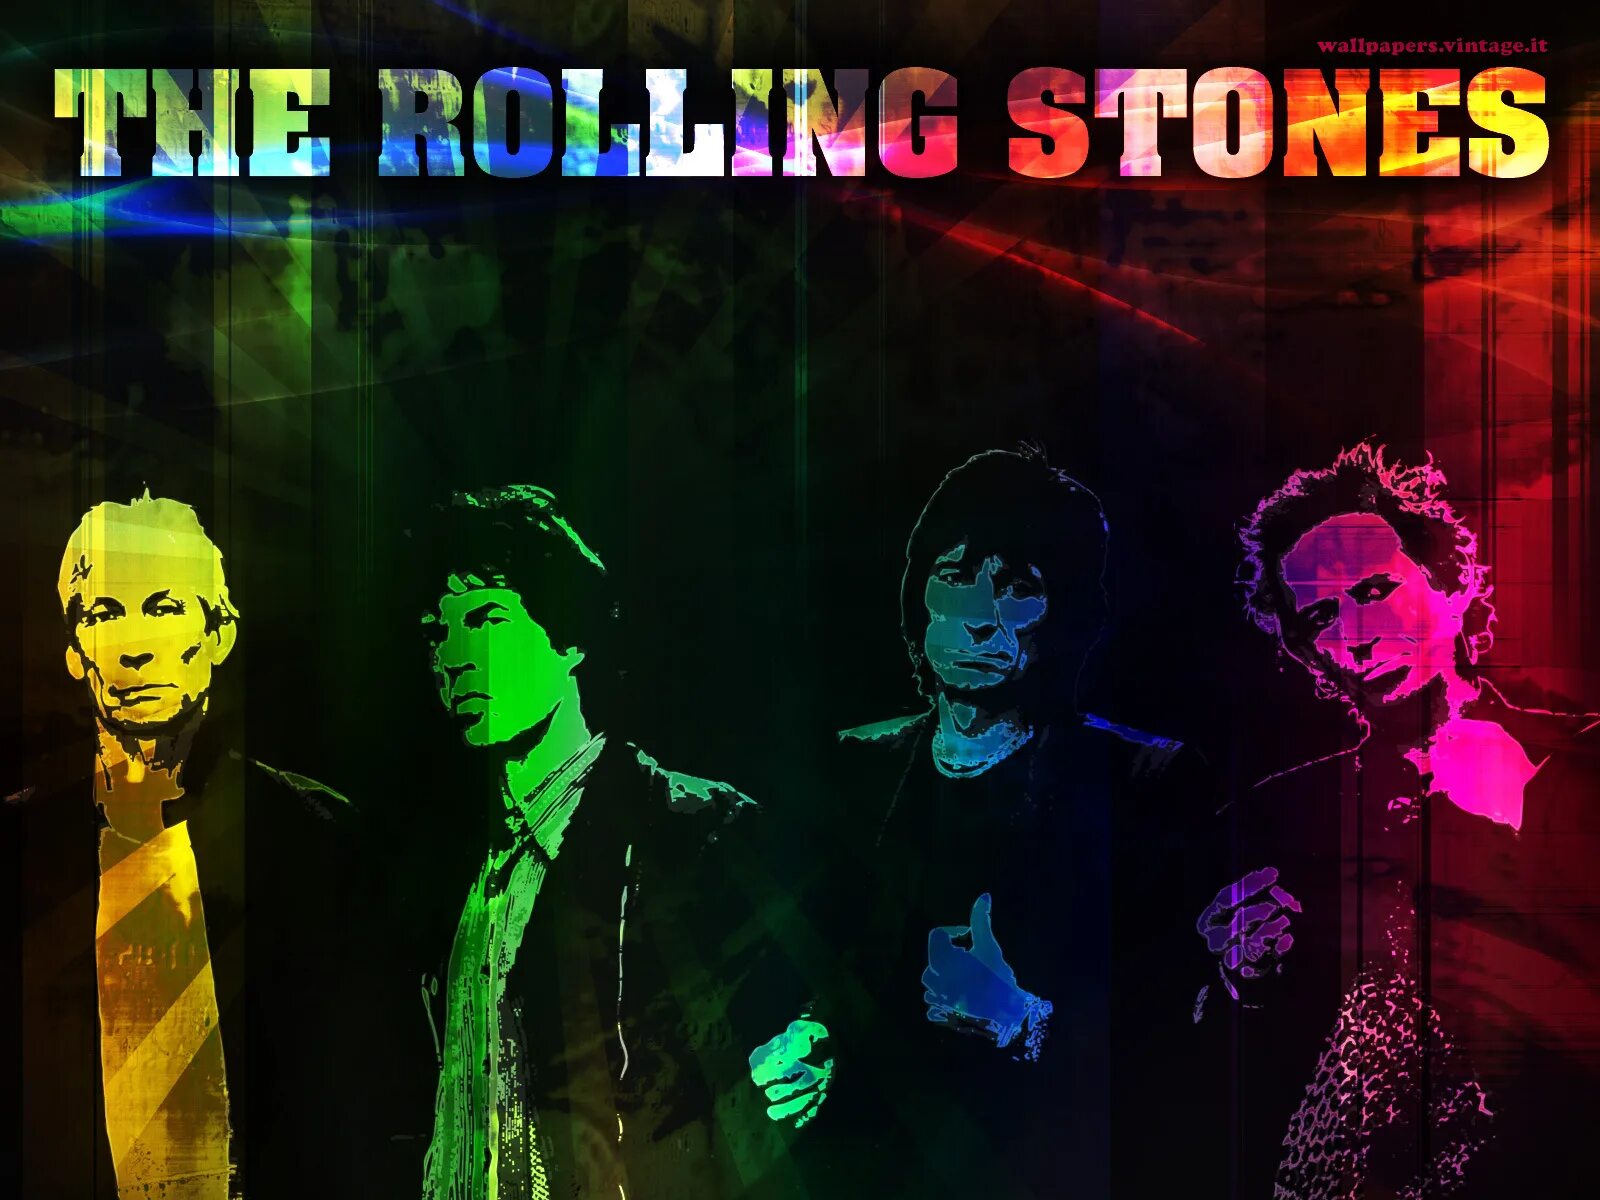 Обои Роллинг. Обои Роллинг стоунз. Язык группы Rolling Stones. The Rolling Stones надпись.